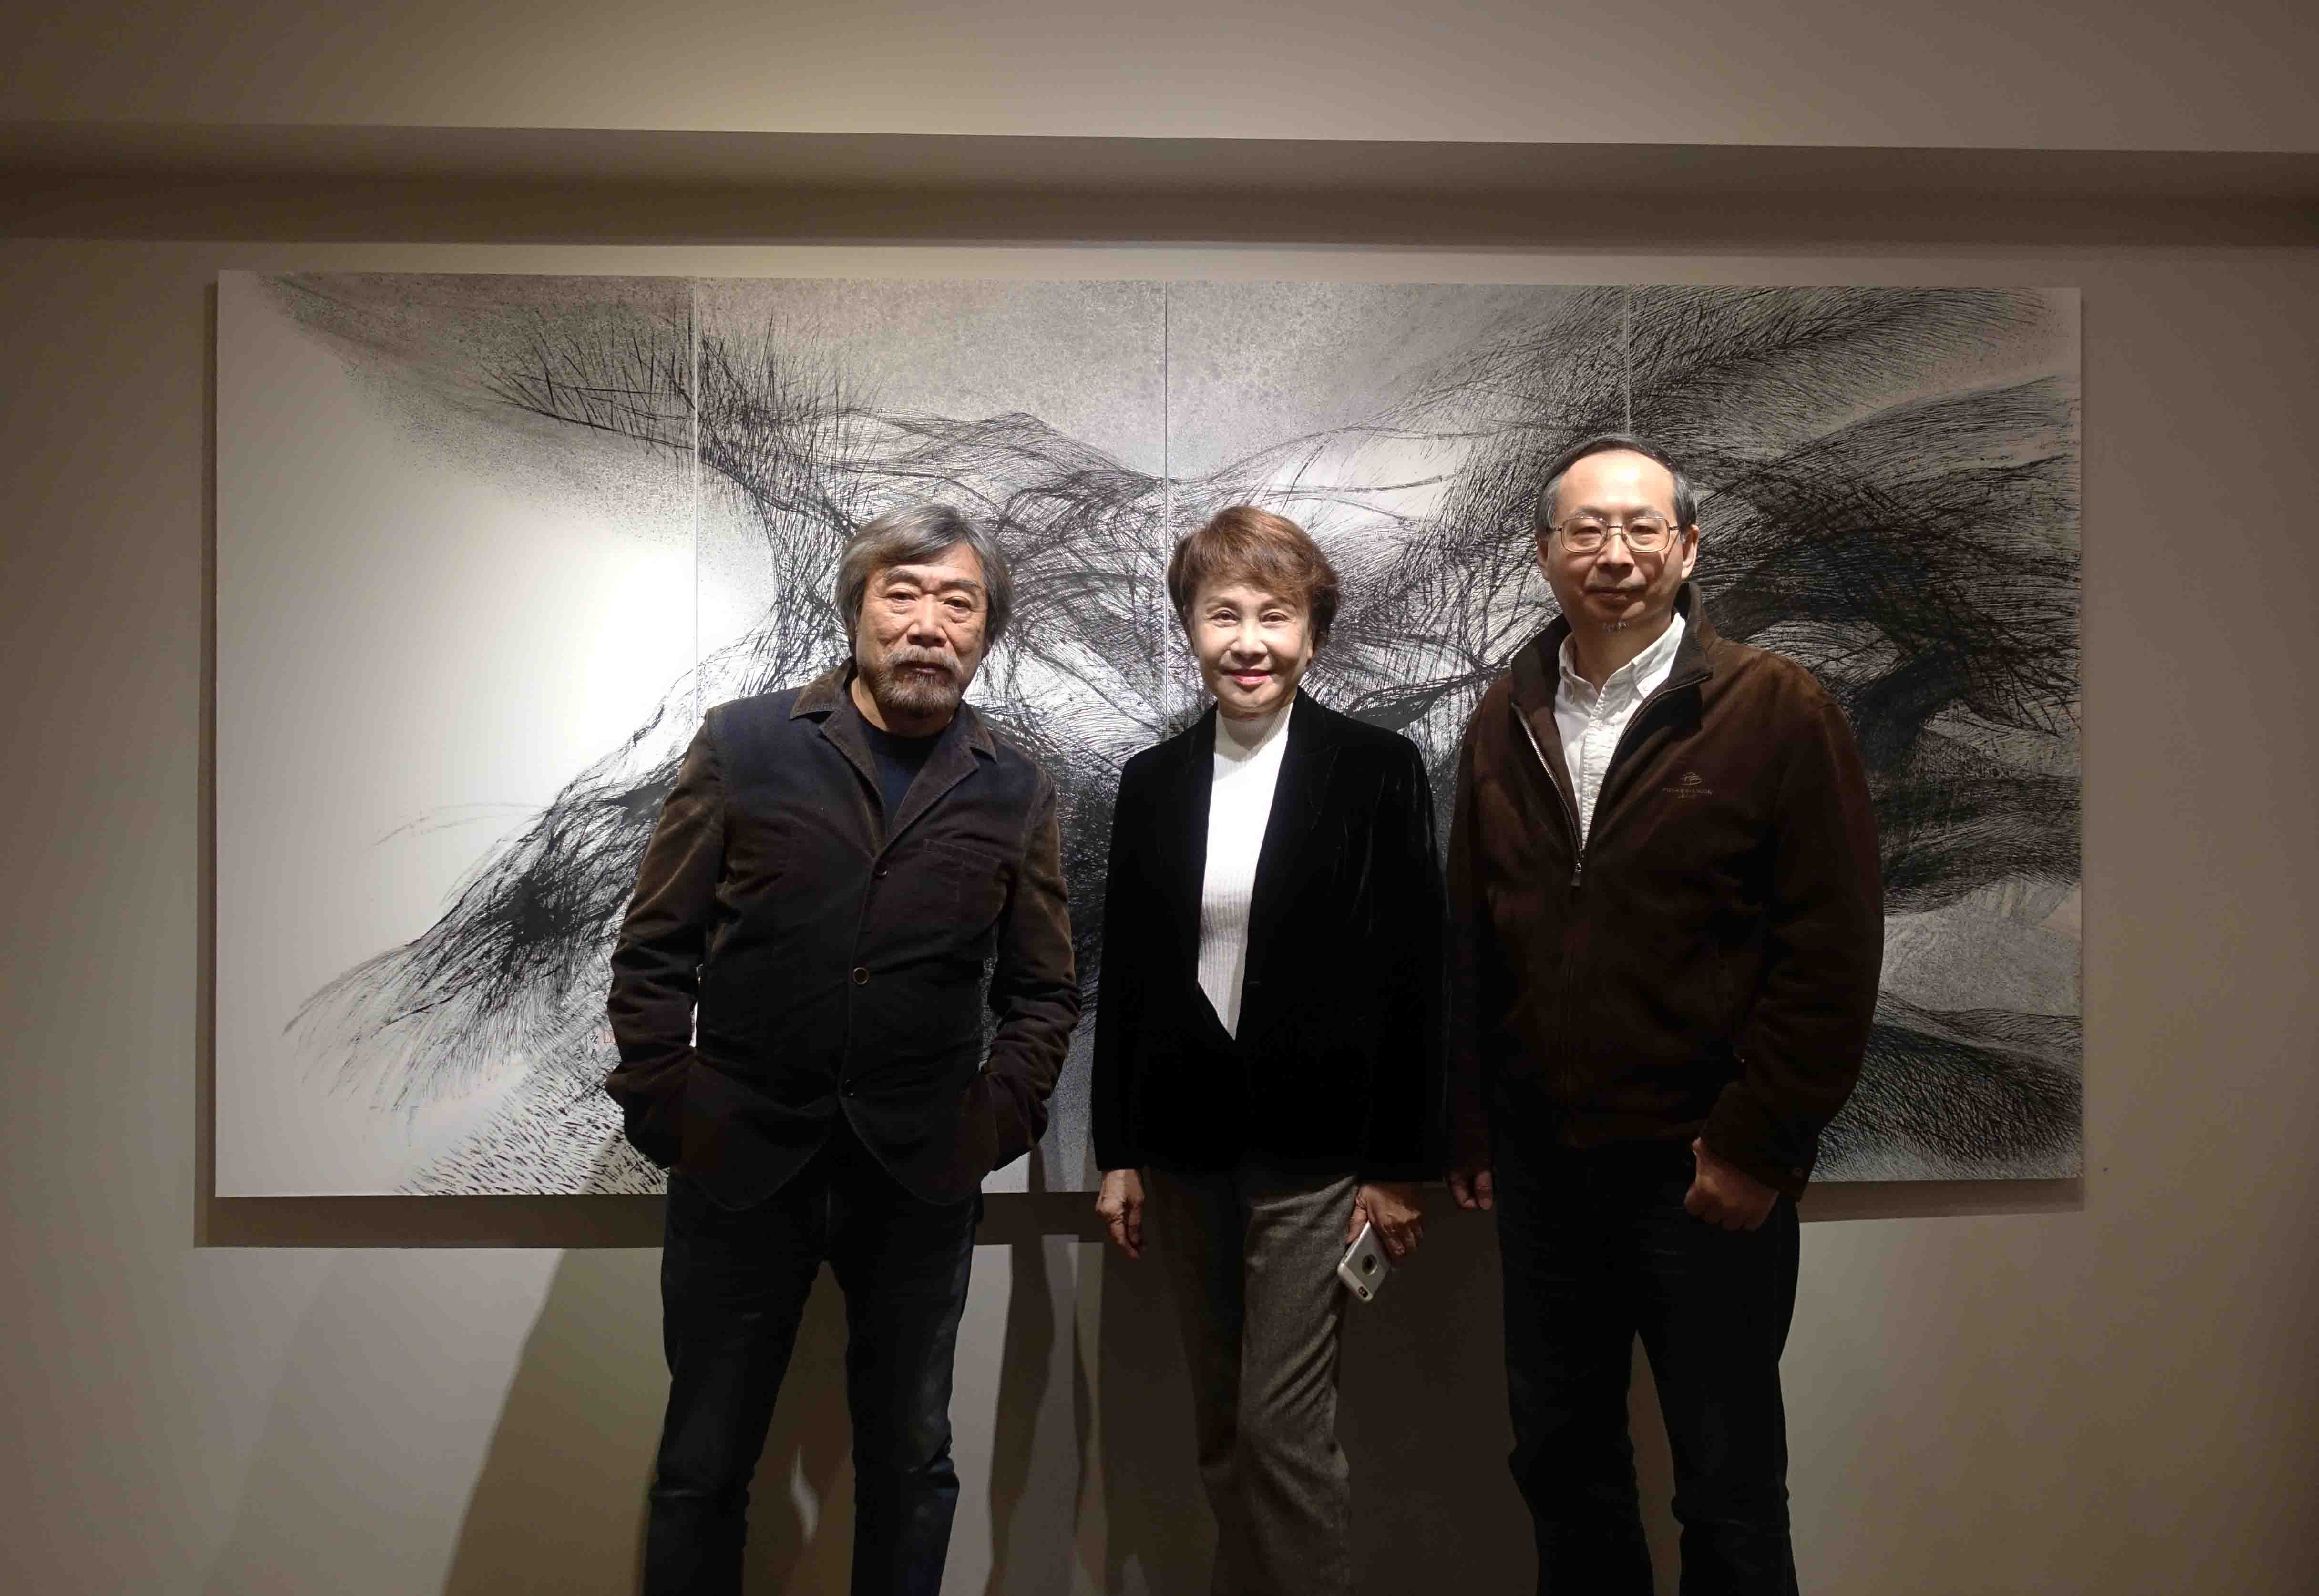 藝術家莊普與藝術家洛貞以及藝術家陶文岳展覽現場合影(由左至右)。